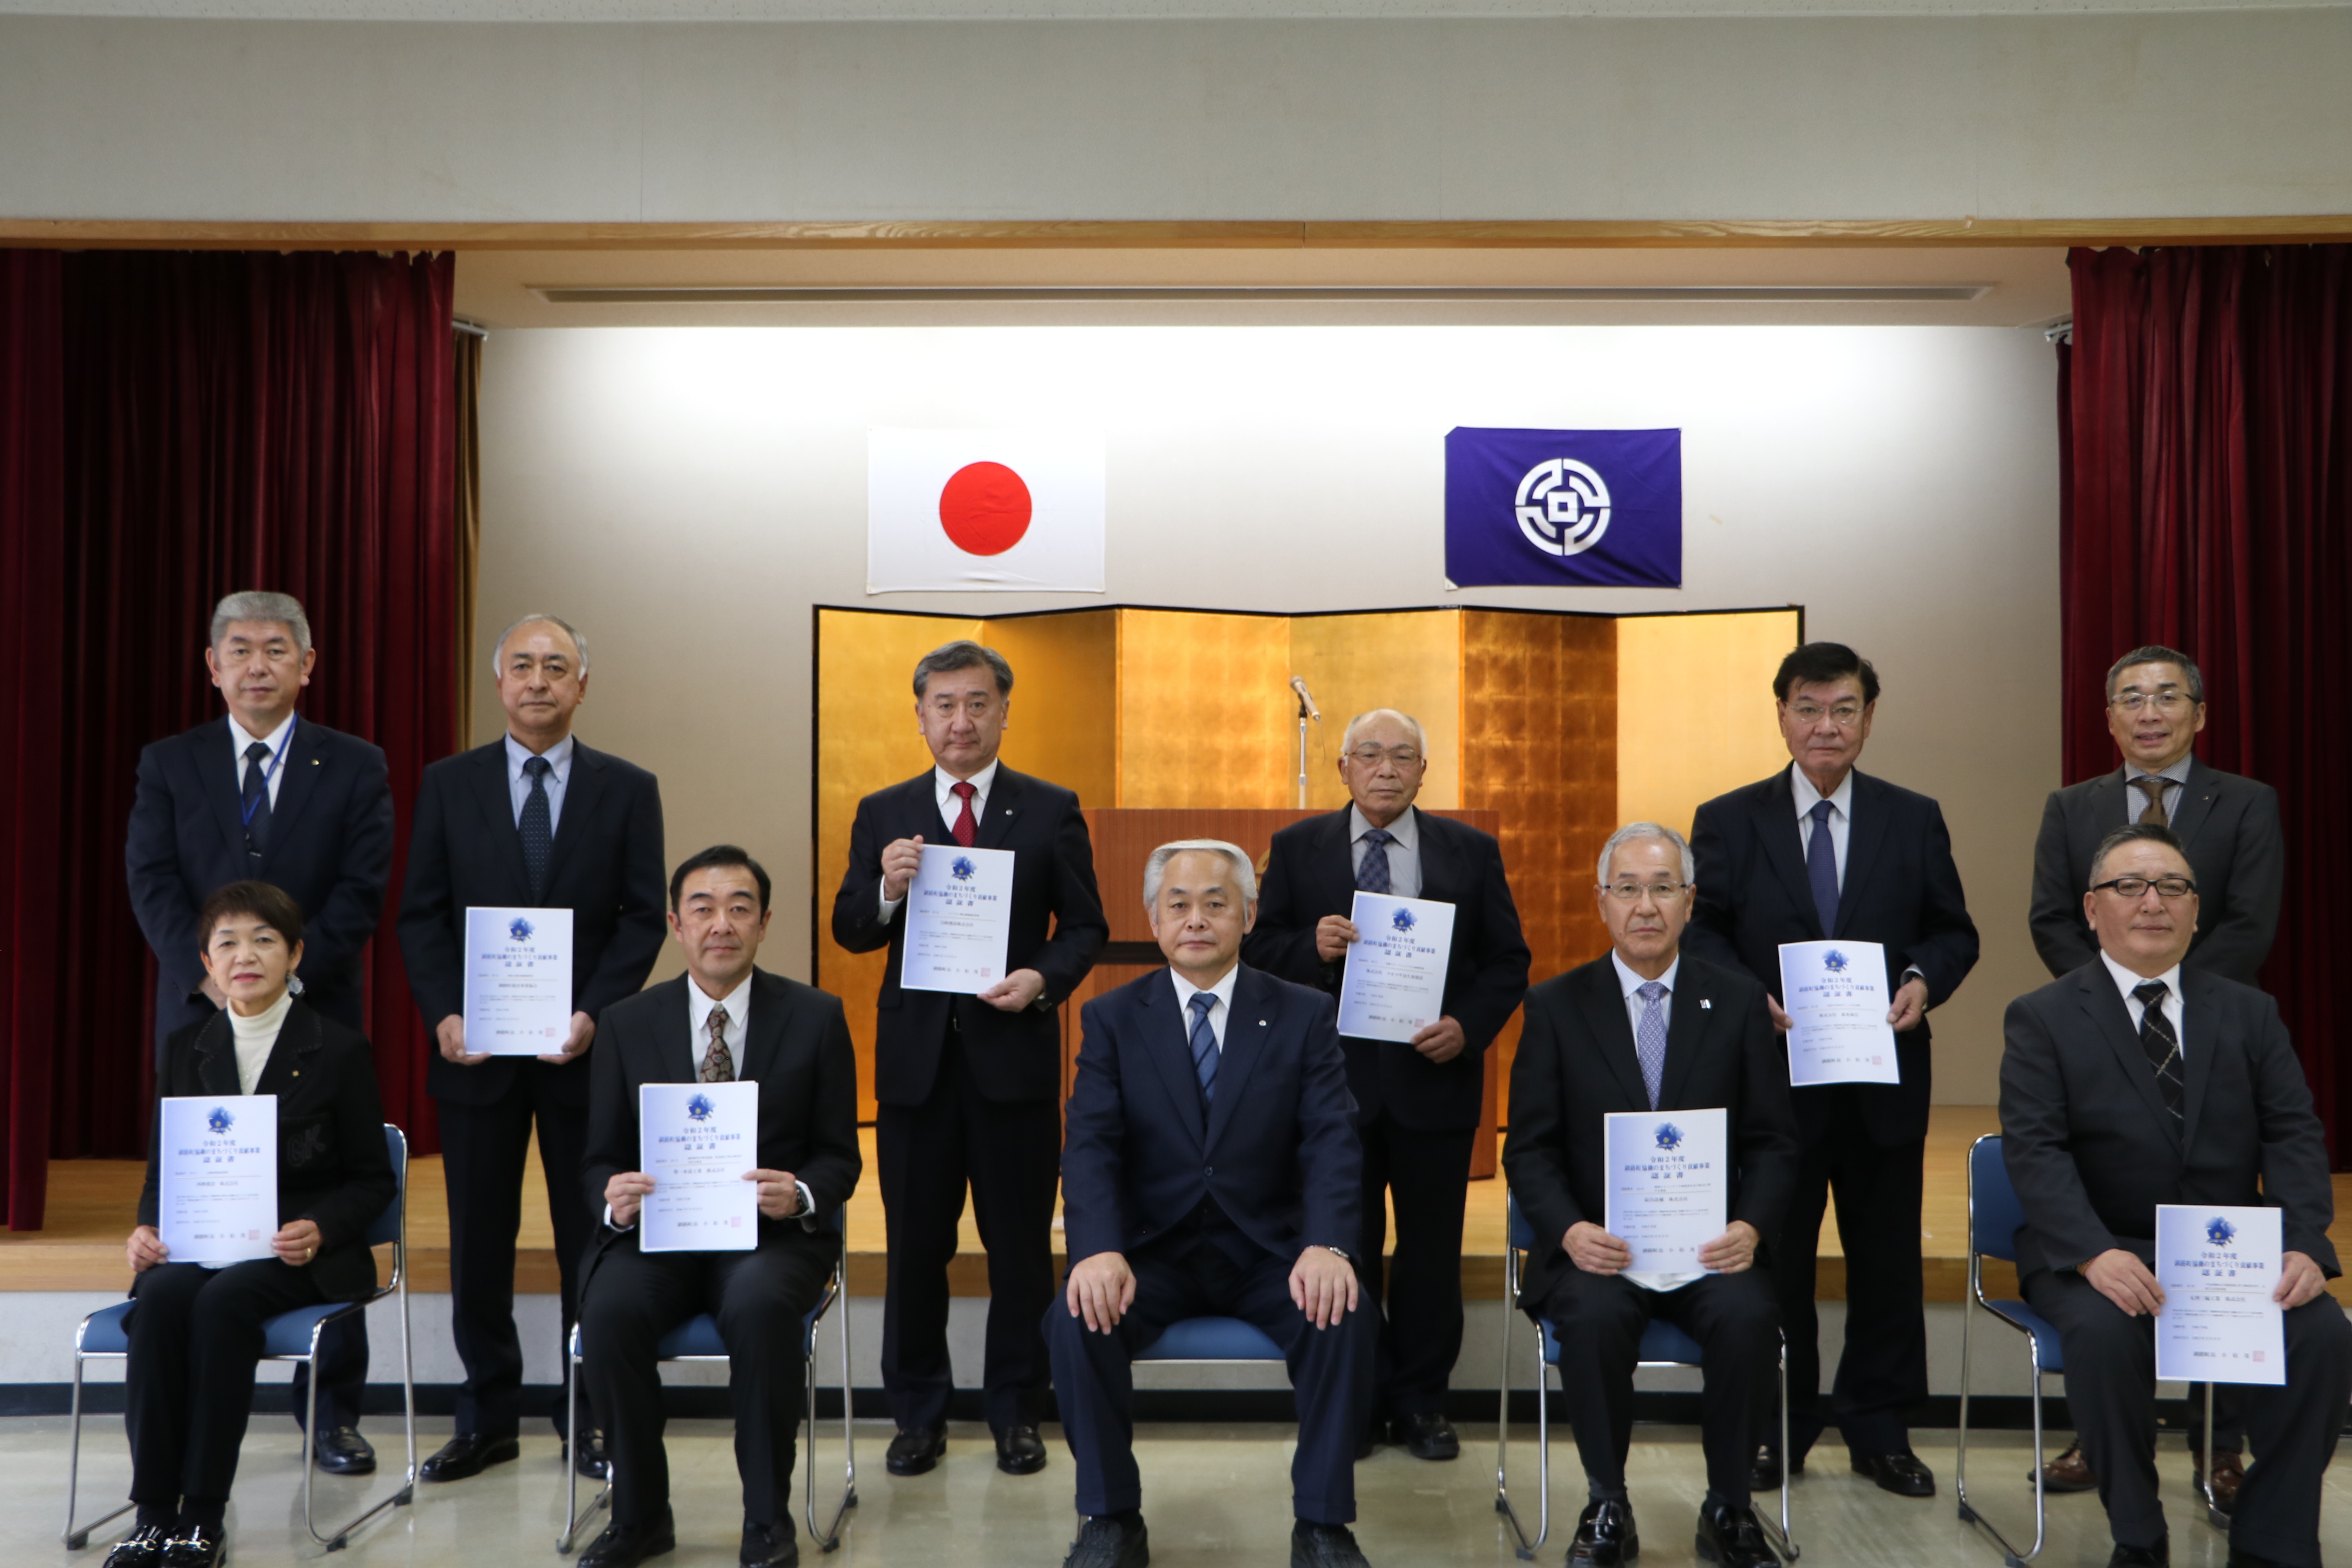 釧路町協働のまちづくり貢献事業認証書交付式で8事業所に認証書を交付